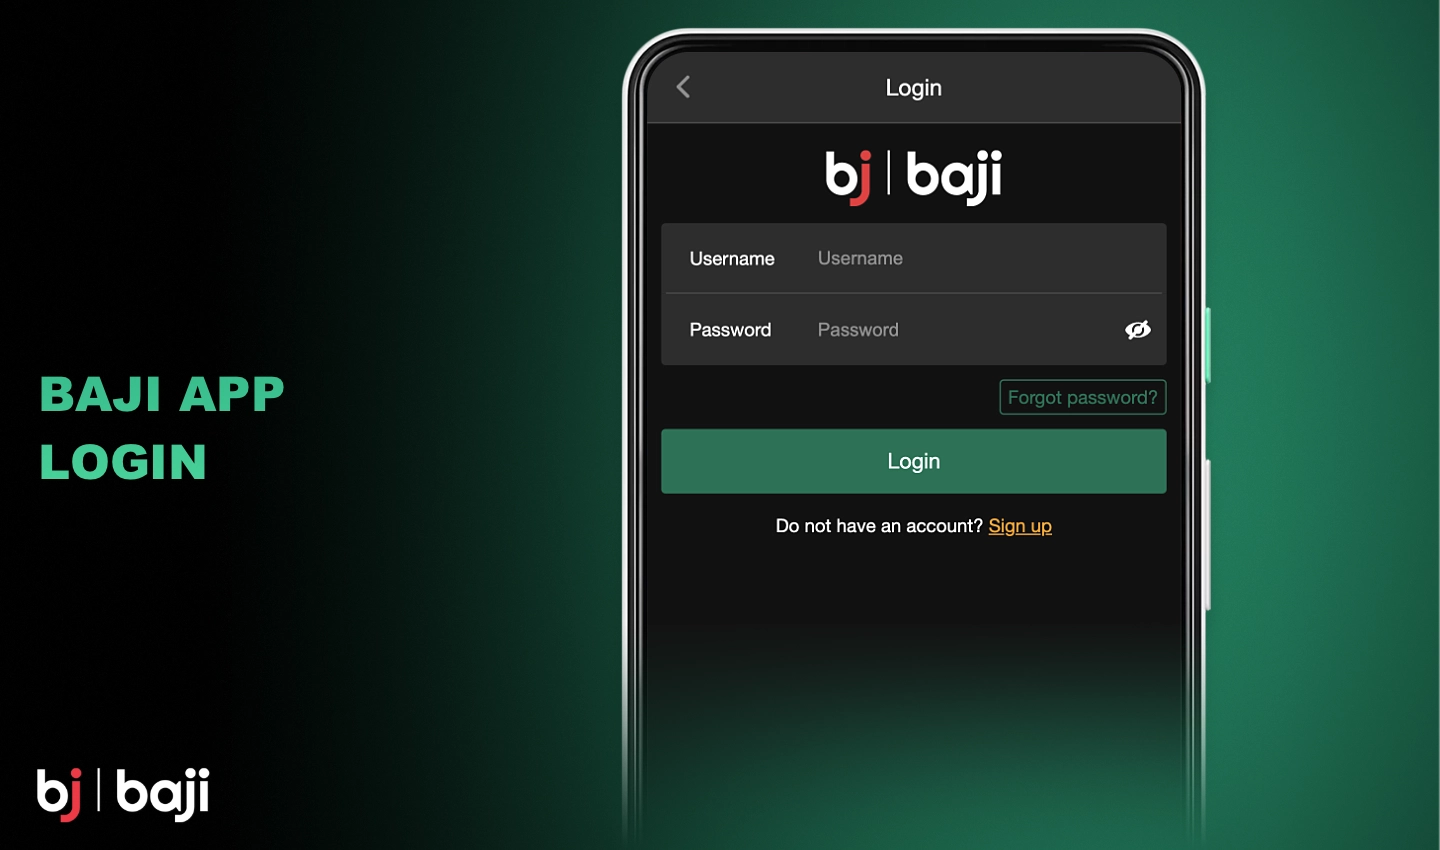 Baji ऐप में अपने व्यक्तिगत खाते में लॉग इन करने के लिए, आपको अपना खाता पंजीकृत करते समय प्रदान किए गए विवरण का उपयोग करना होगा